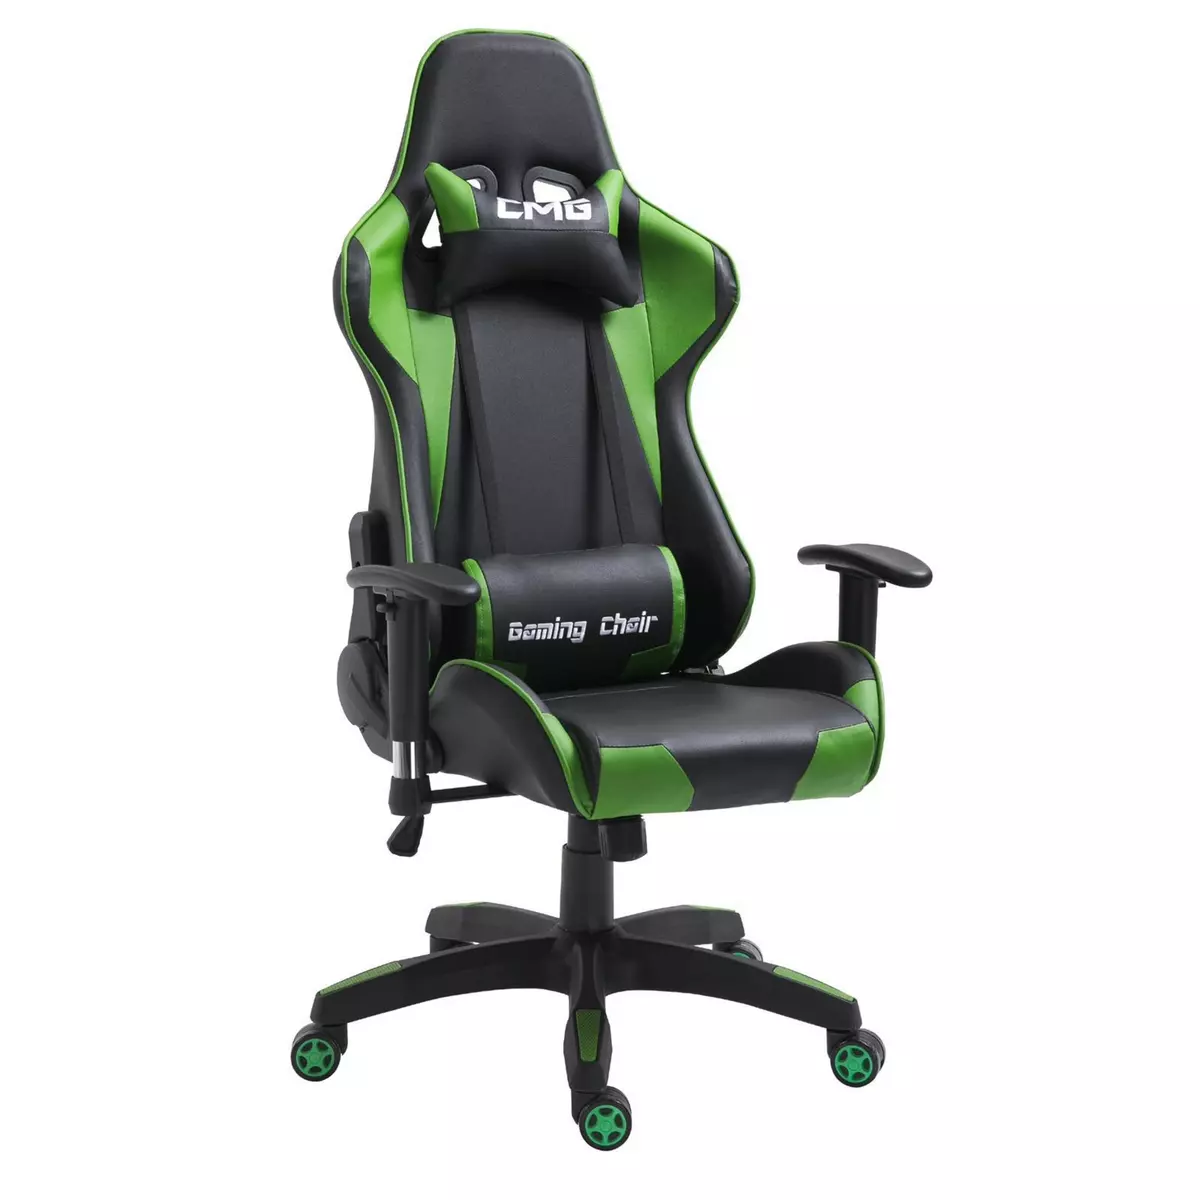 IDIMEX Chaise de bureau GAMING fauteuil ergonomique avec coussins, siège style racing racer gamer chair, revêtement synthétique noir/vert